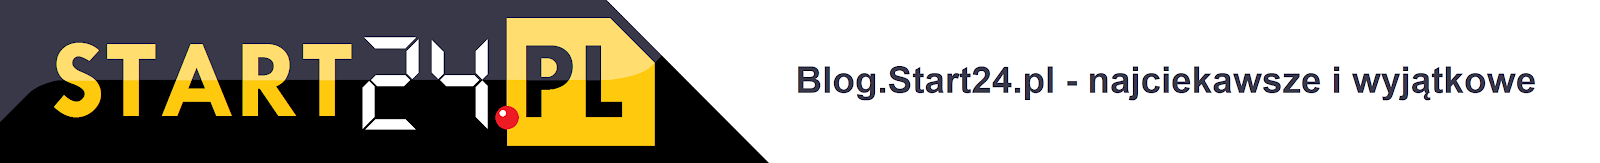 Blog.Start24.pl - najciekawsze i wyjątkowe